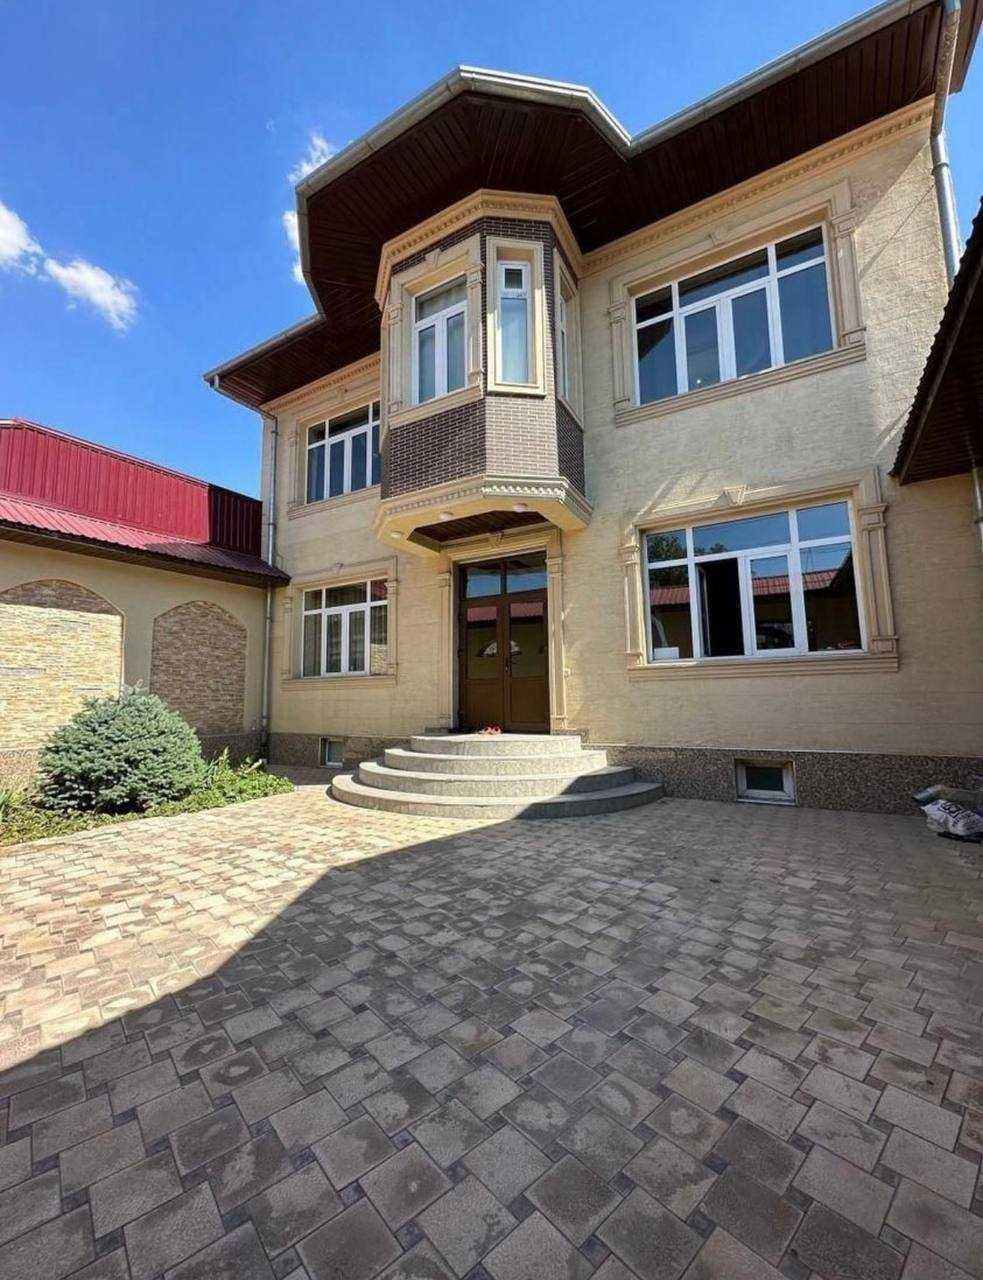 Продается дом в Мирзо Улугбекском районе